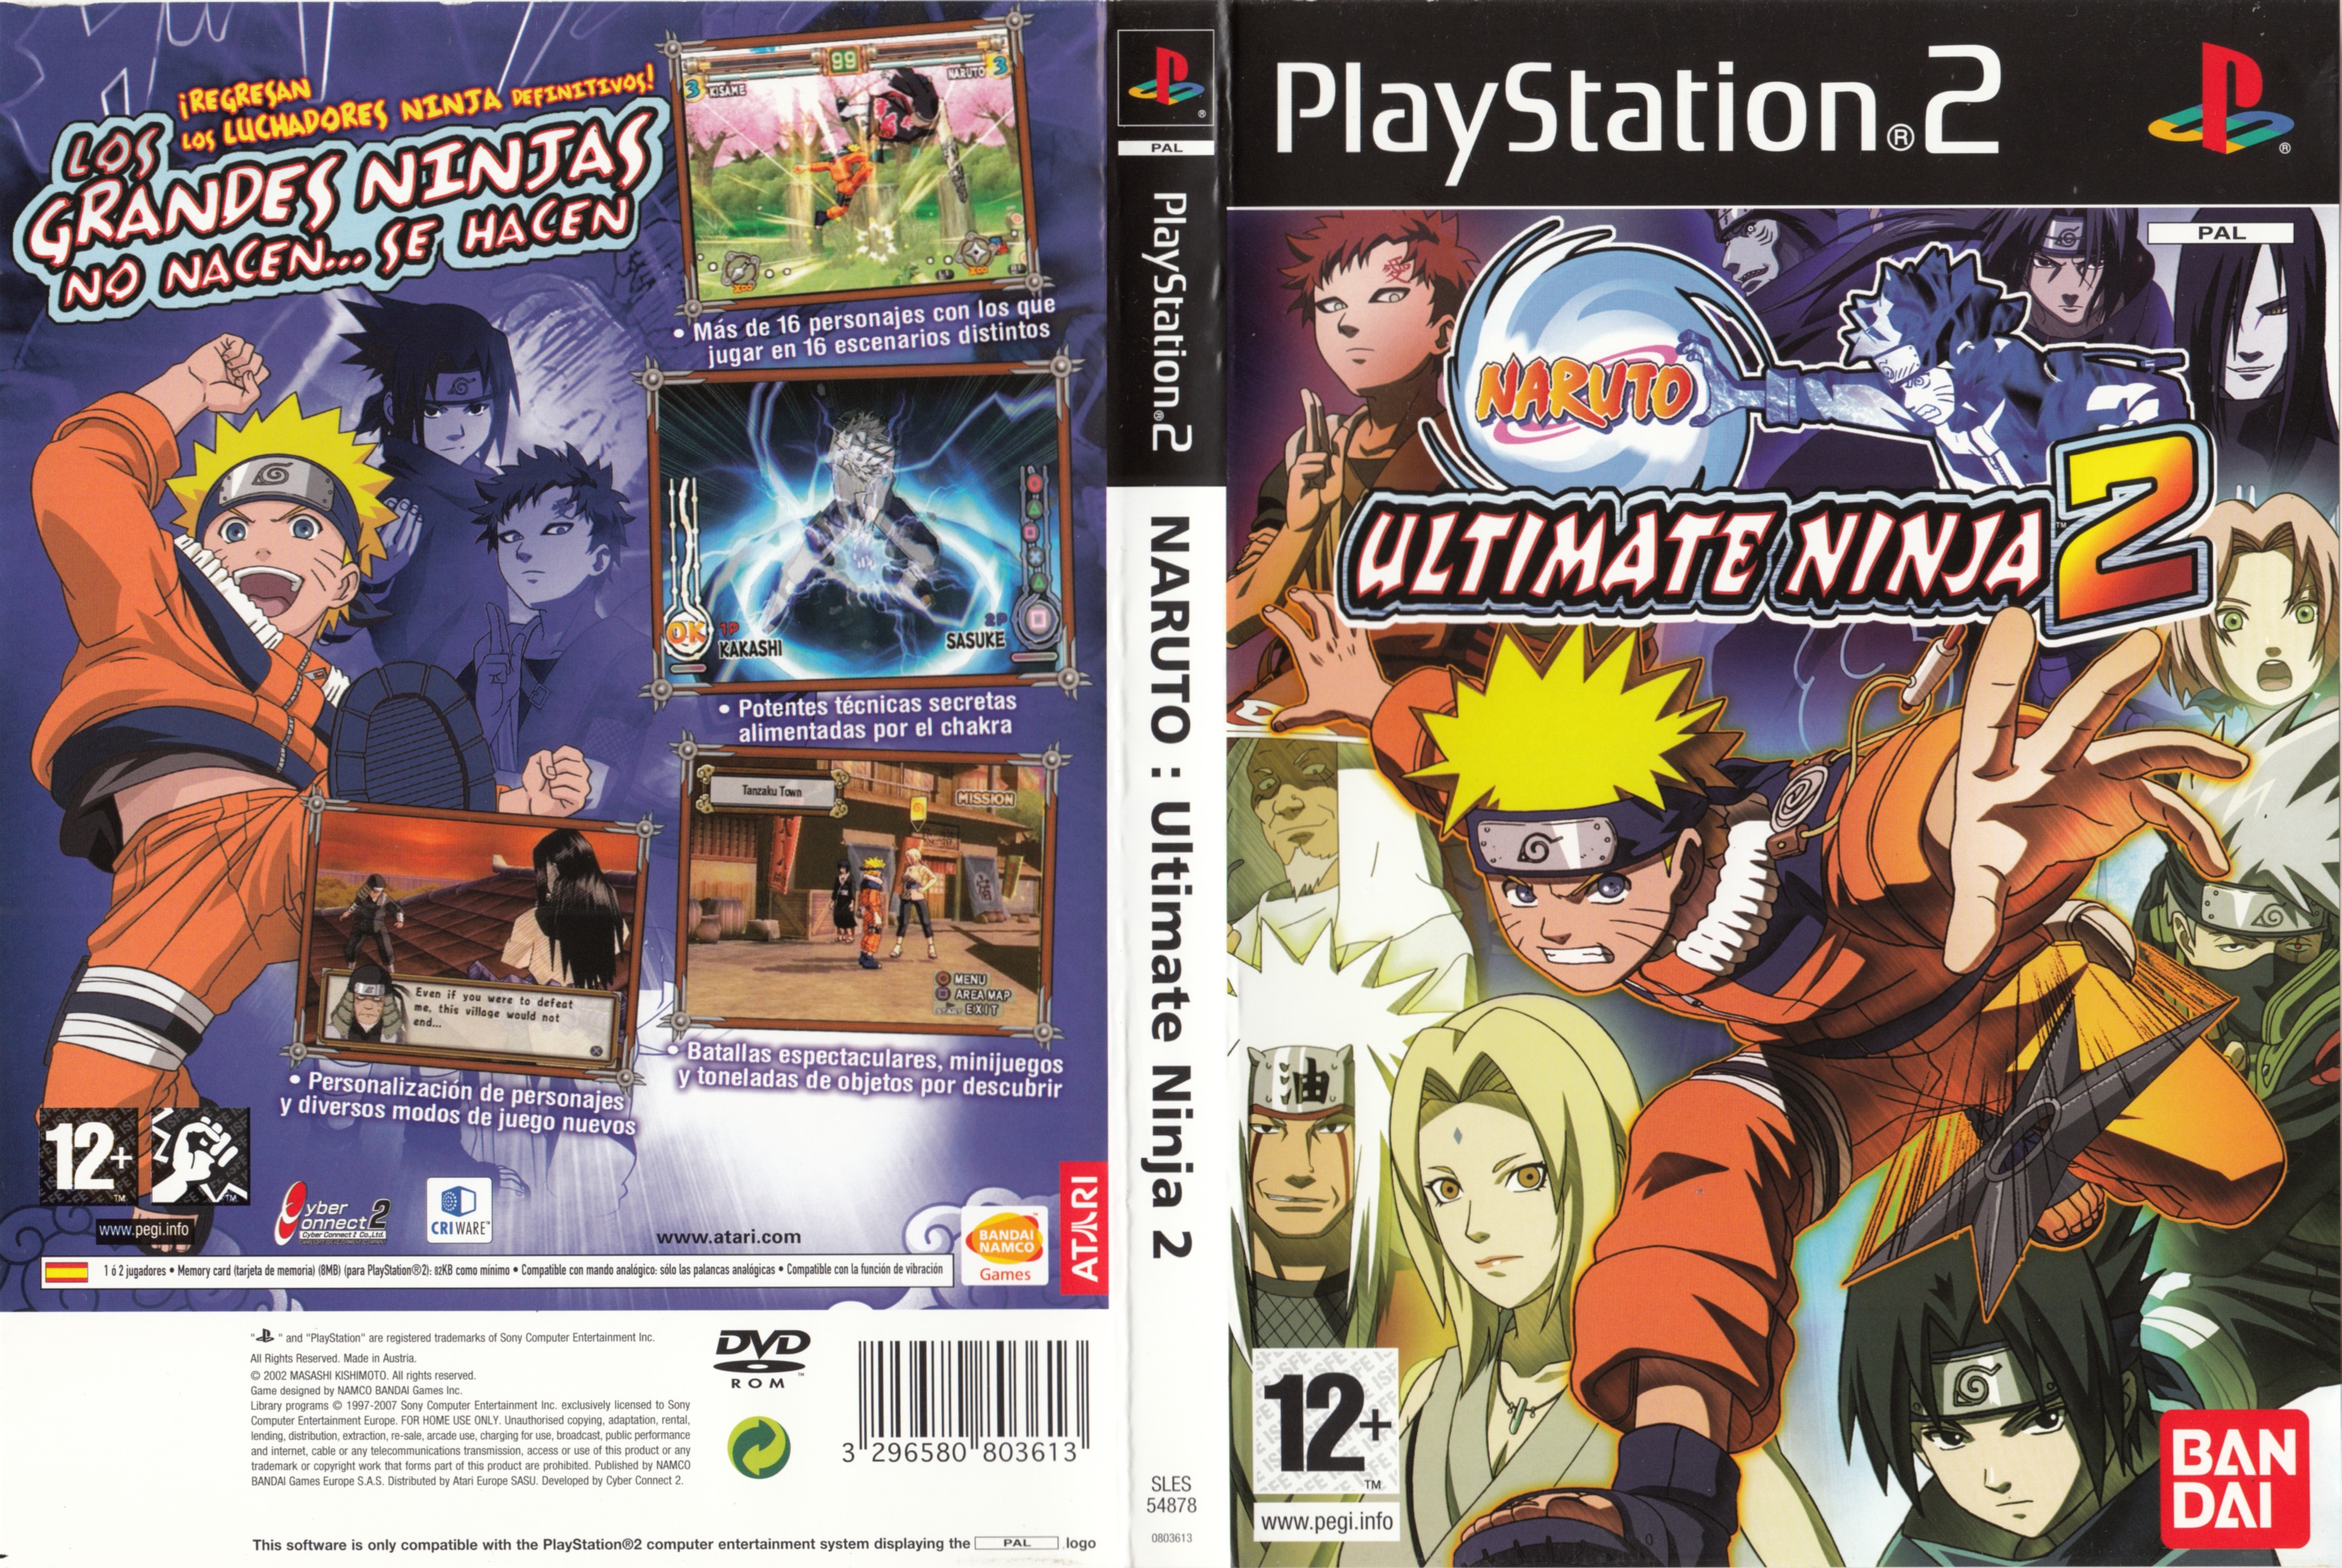 Naruto Ultimate Ninja Manual & Cover (NTSC) (PS2) : Bandai Namco